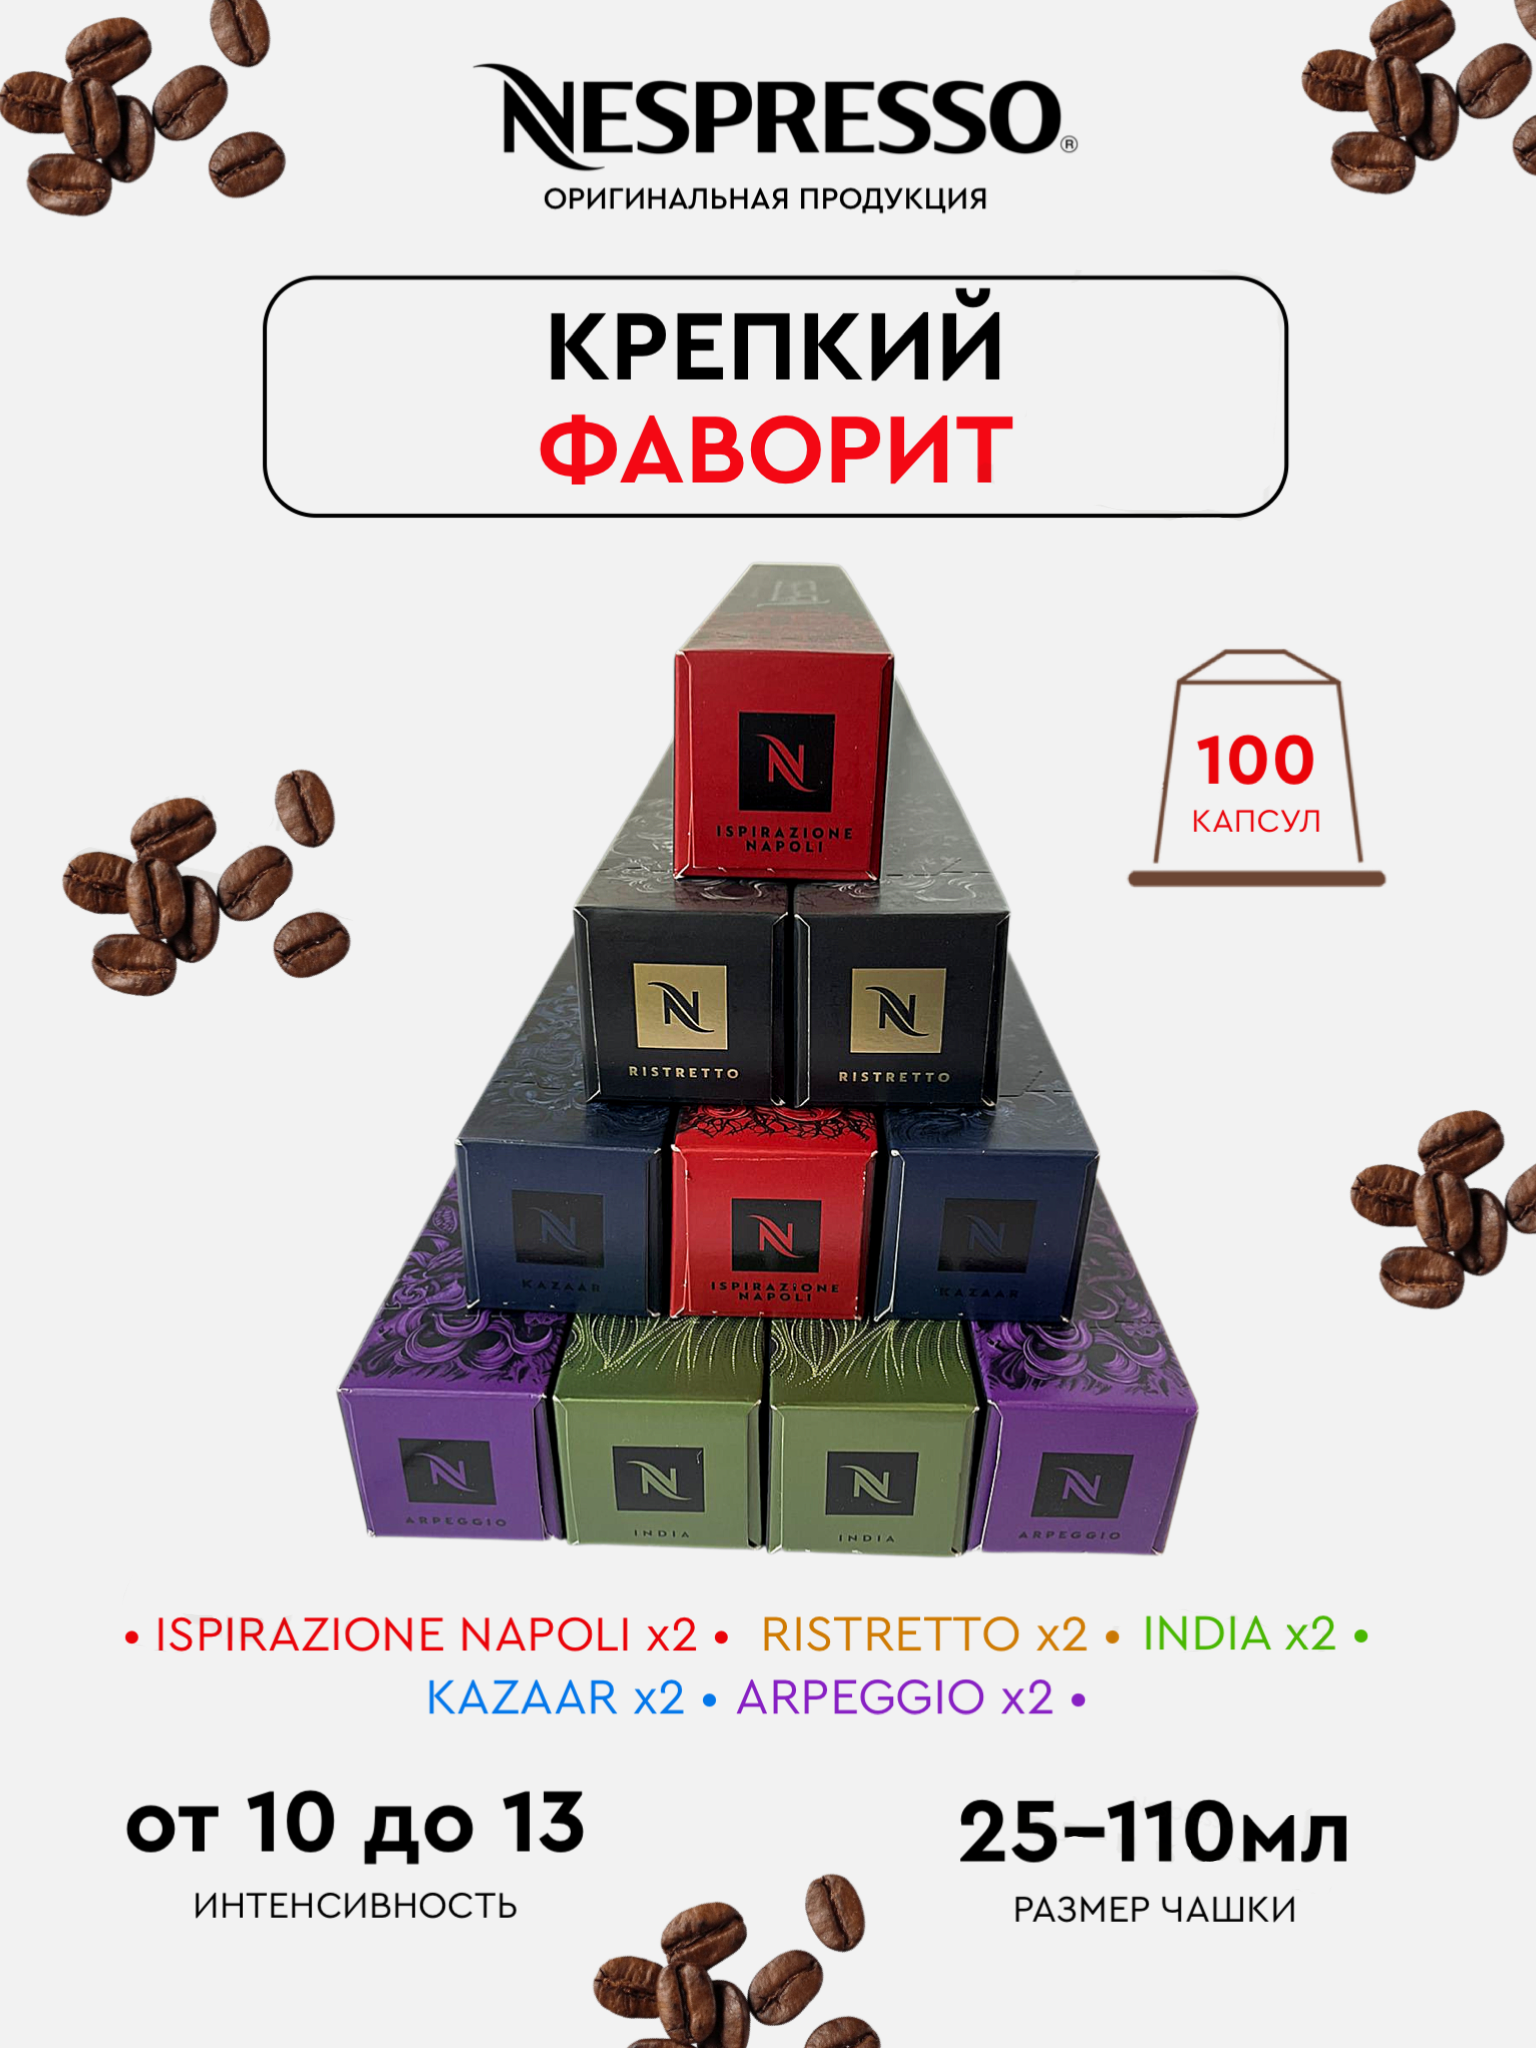 Капсулы для кофемашины Nespresso Original Набор Крепкий Фаворит, 100 шт